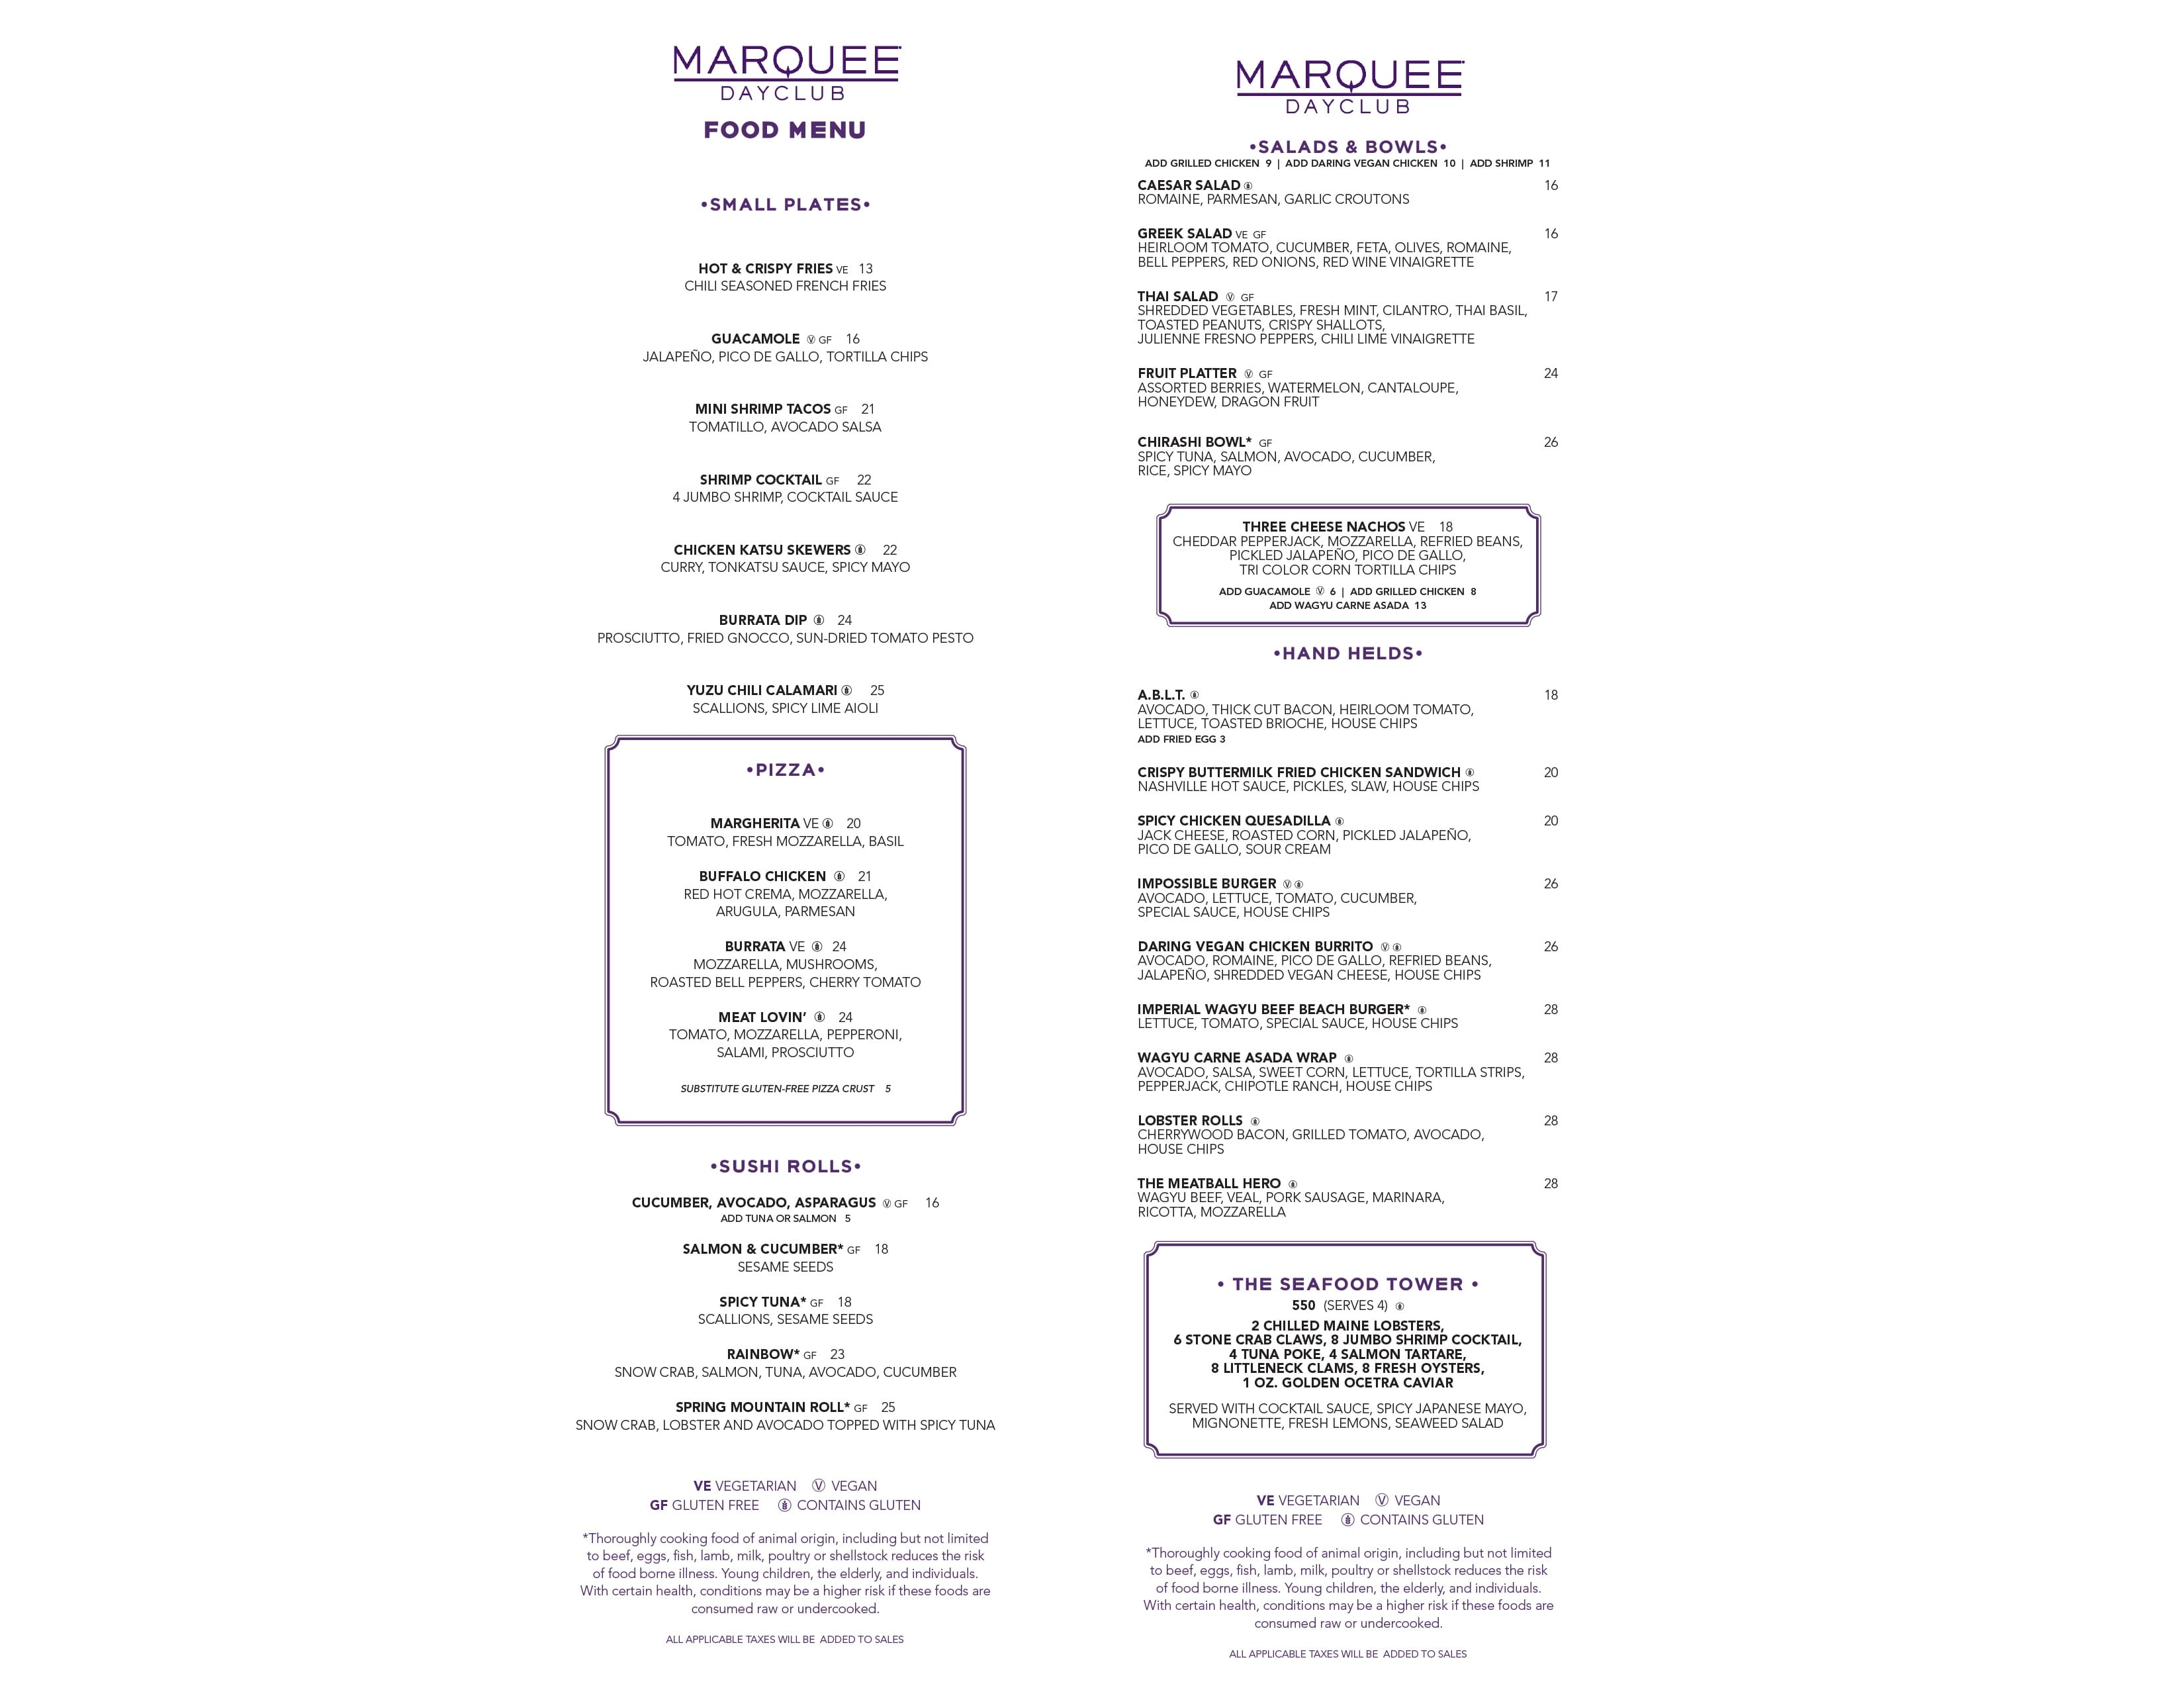 Marquee Dayclub food menu